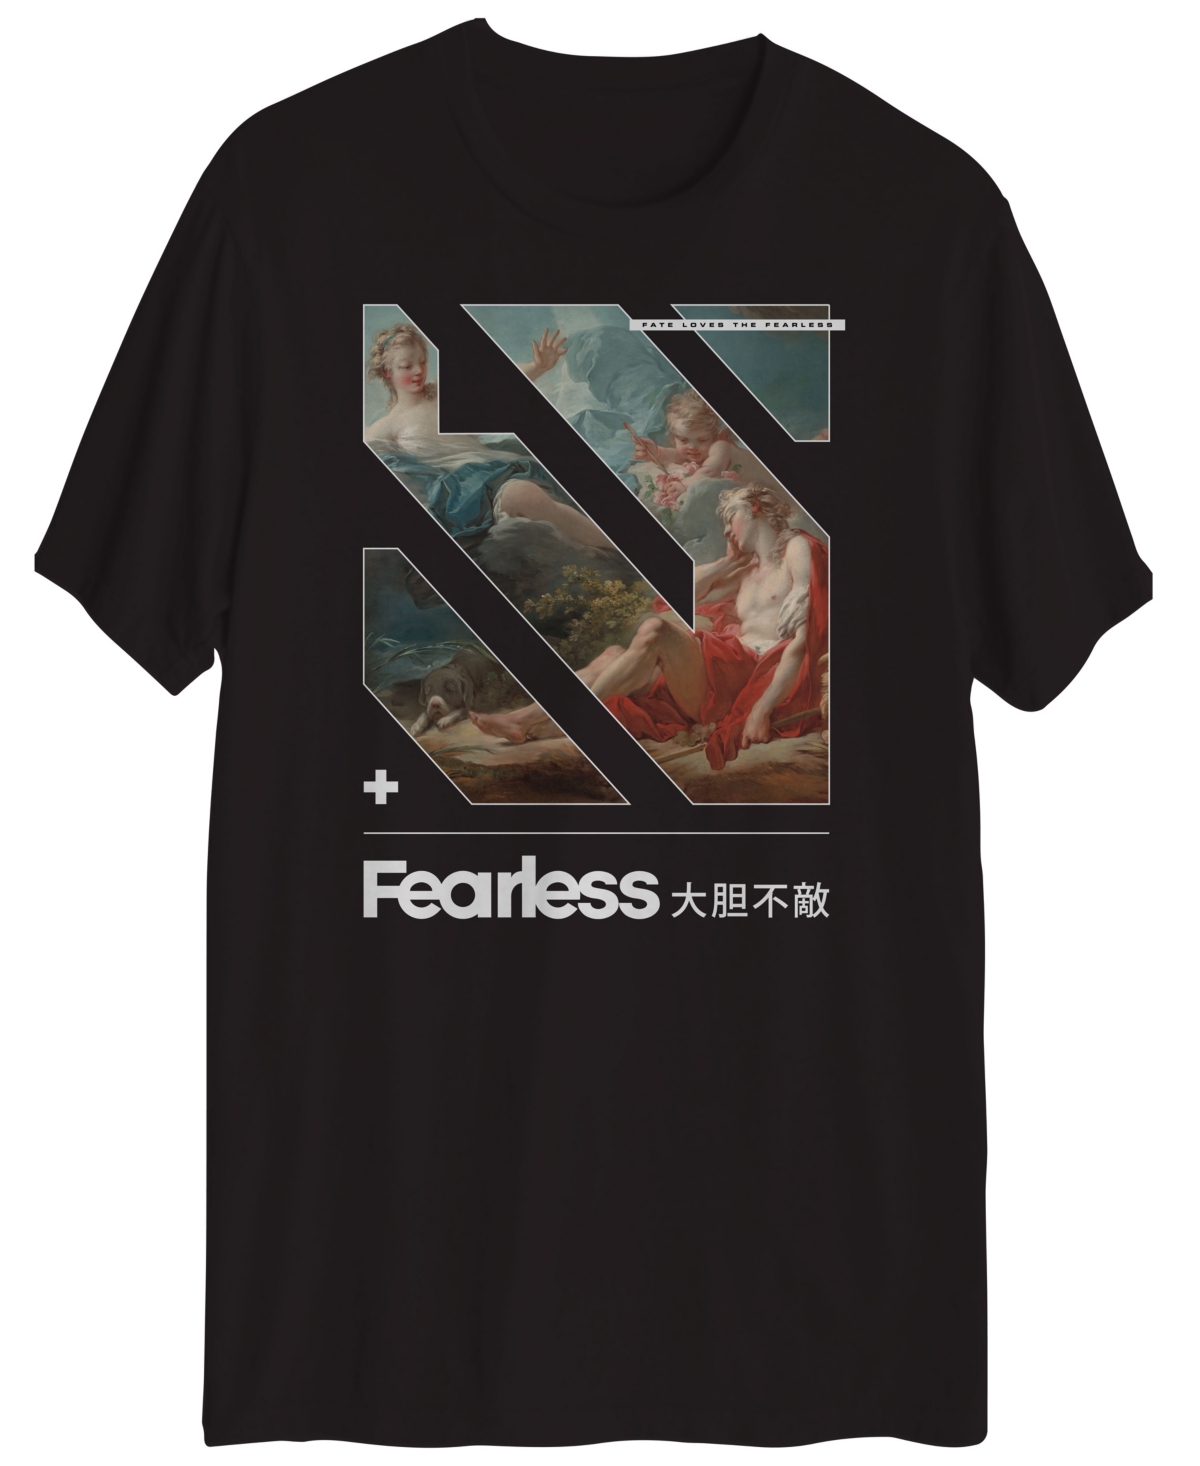 Men's Fearless Short Sleeve T-shirt - Black